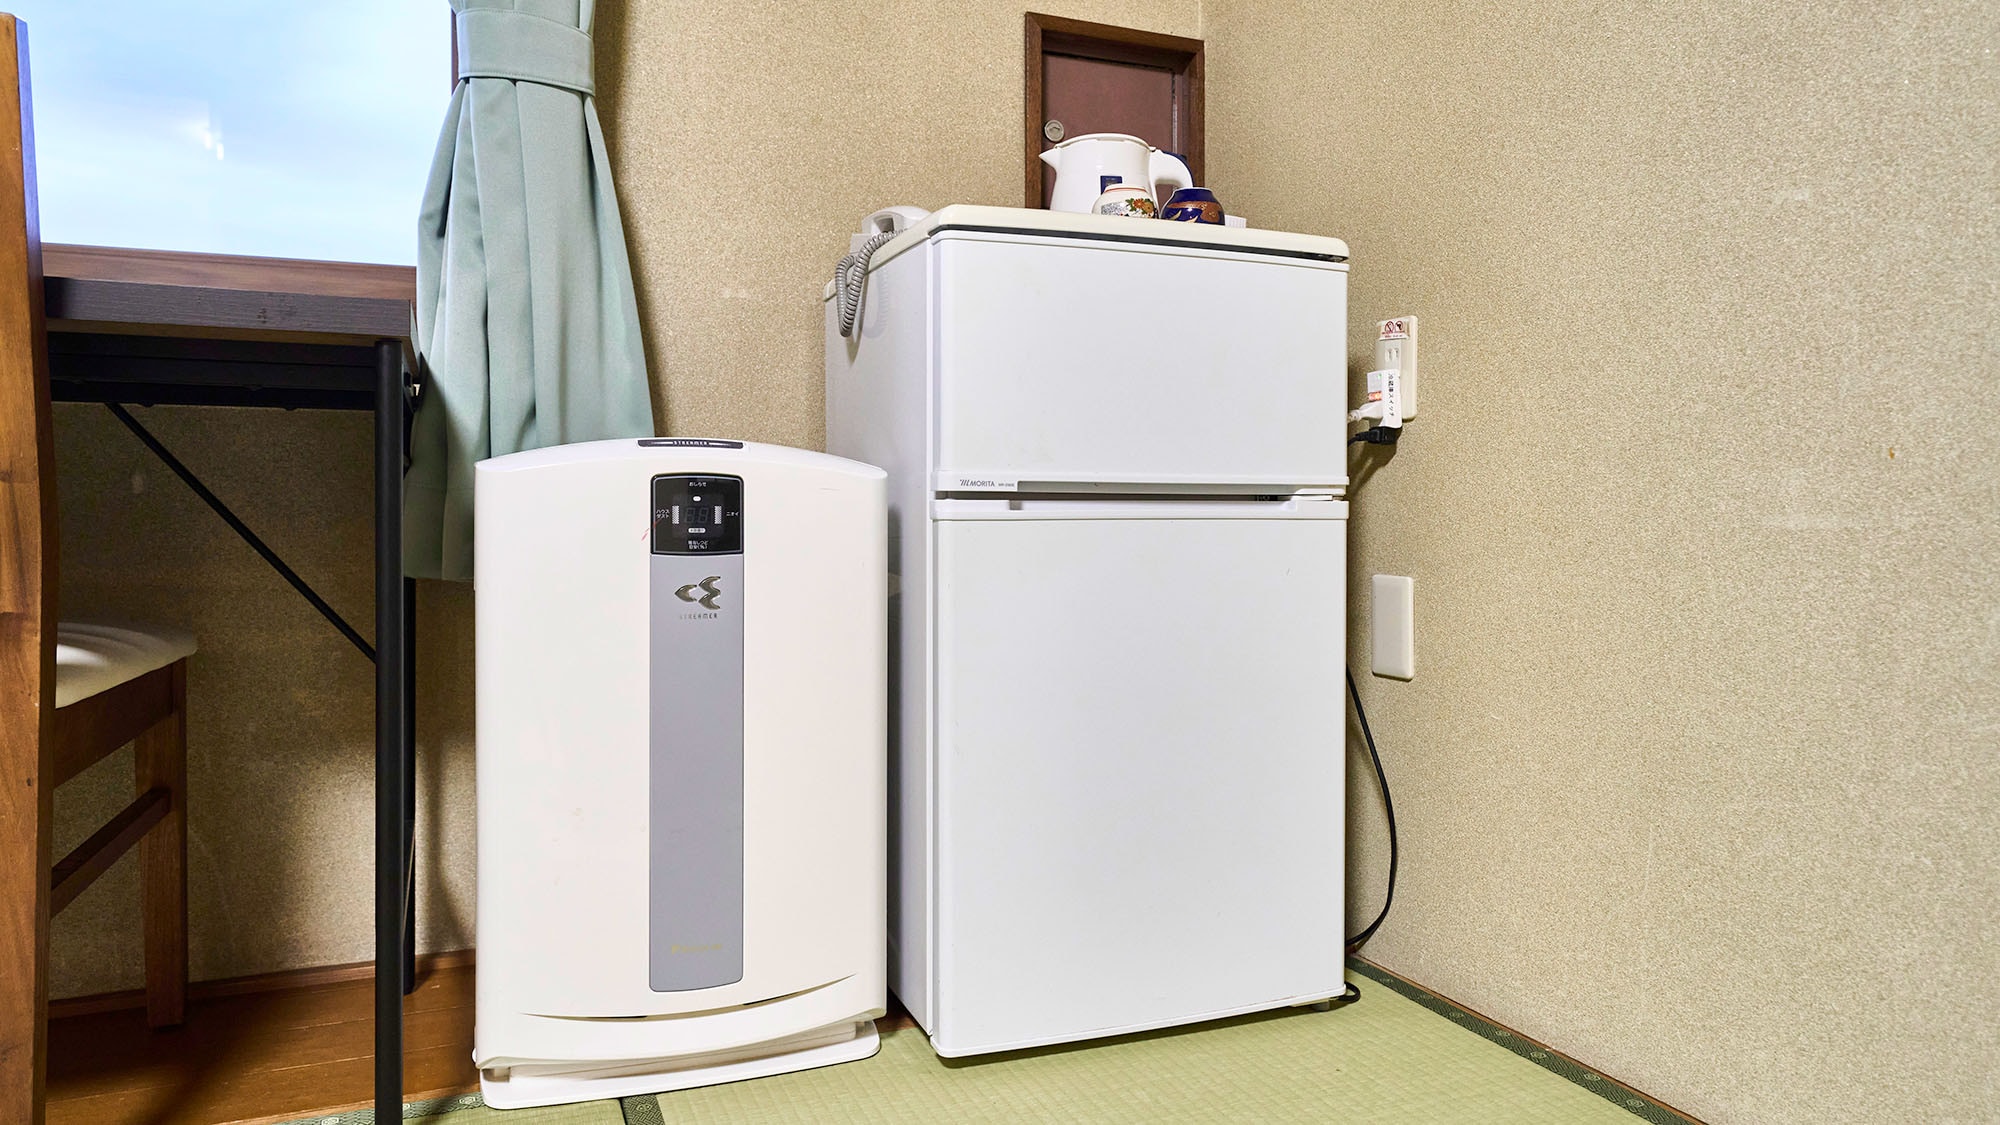 ・【일본식 방 B】냉장고나 공기 청정기 등 쾌적하게 보내기 위한 설비도 갖추고 있습니다